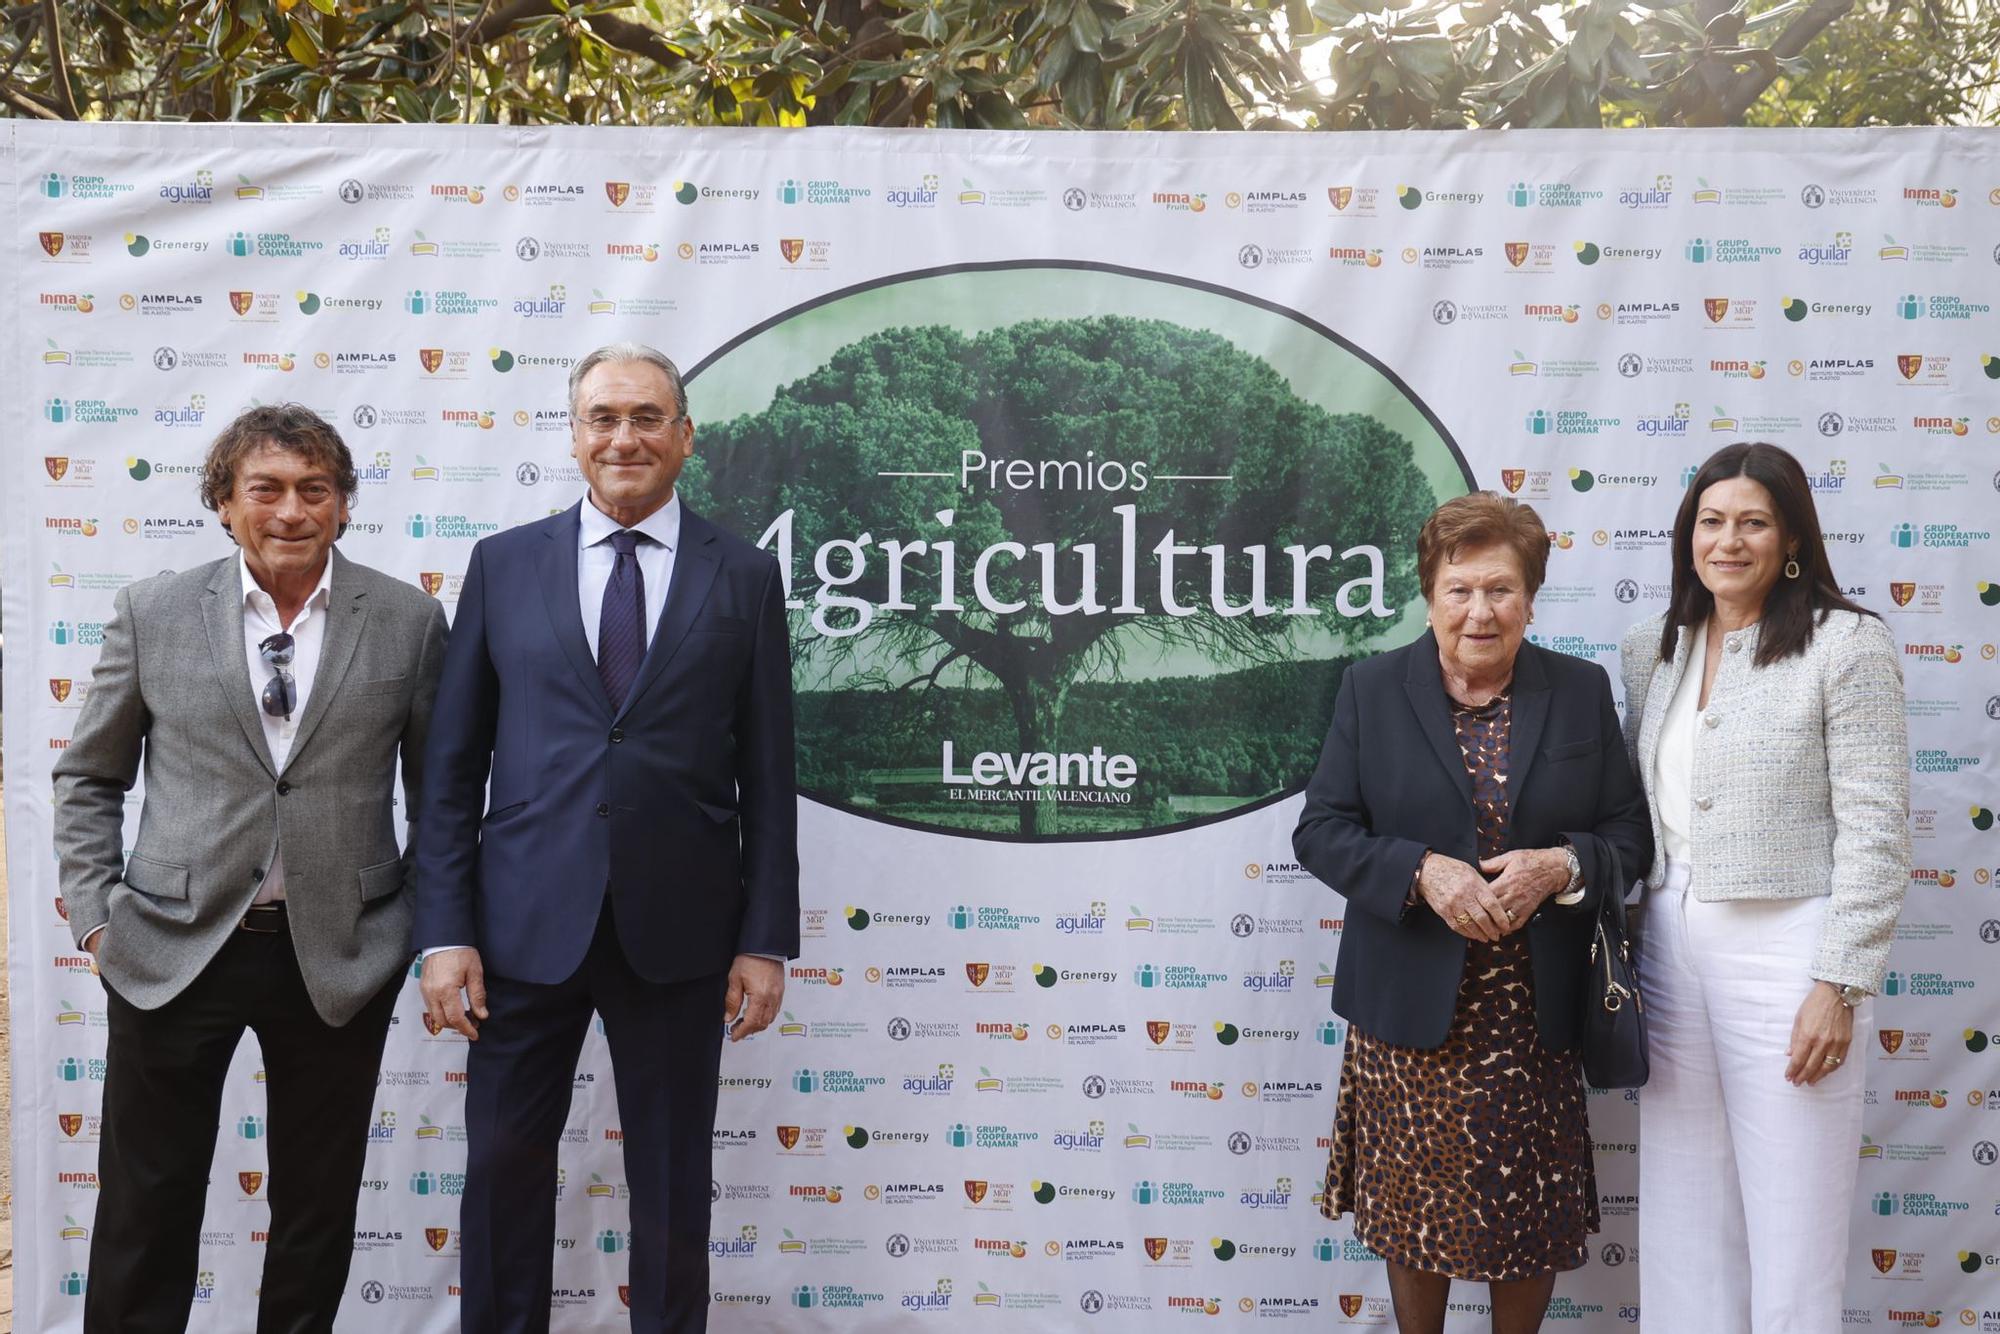 Los Premios Agricultura al sector agro, en imágenes